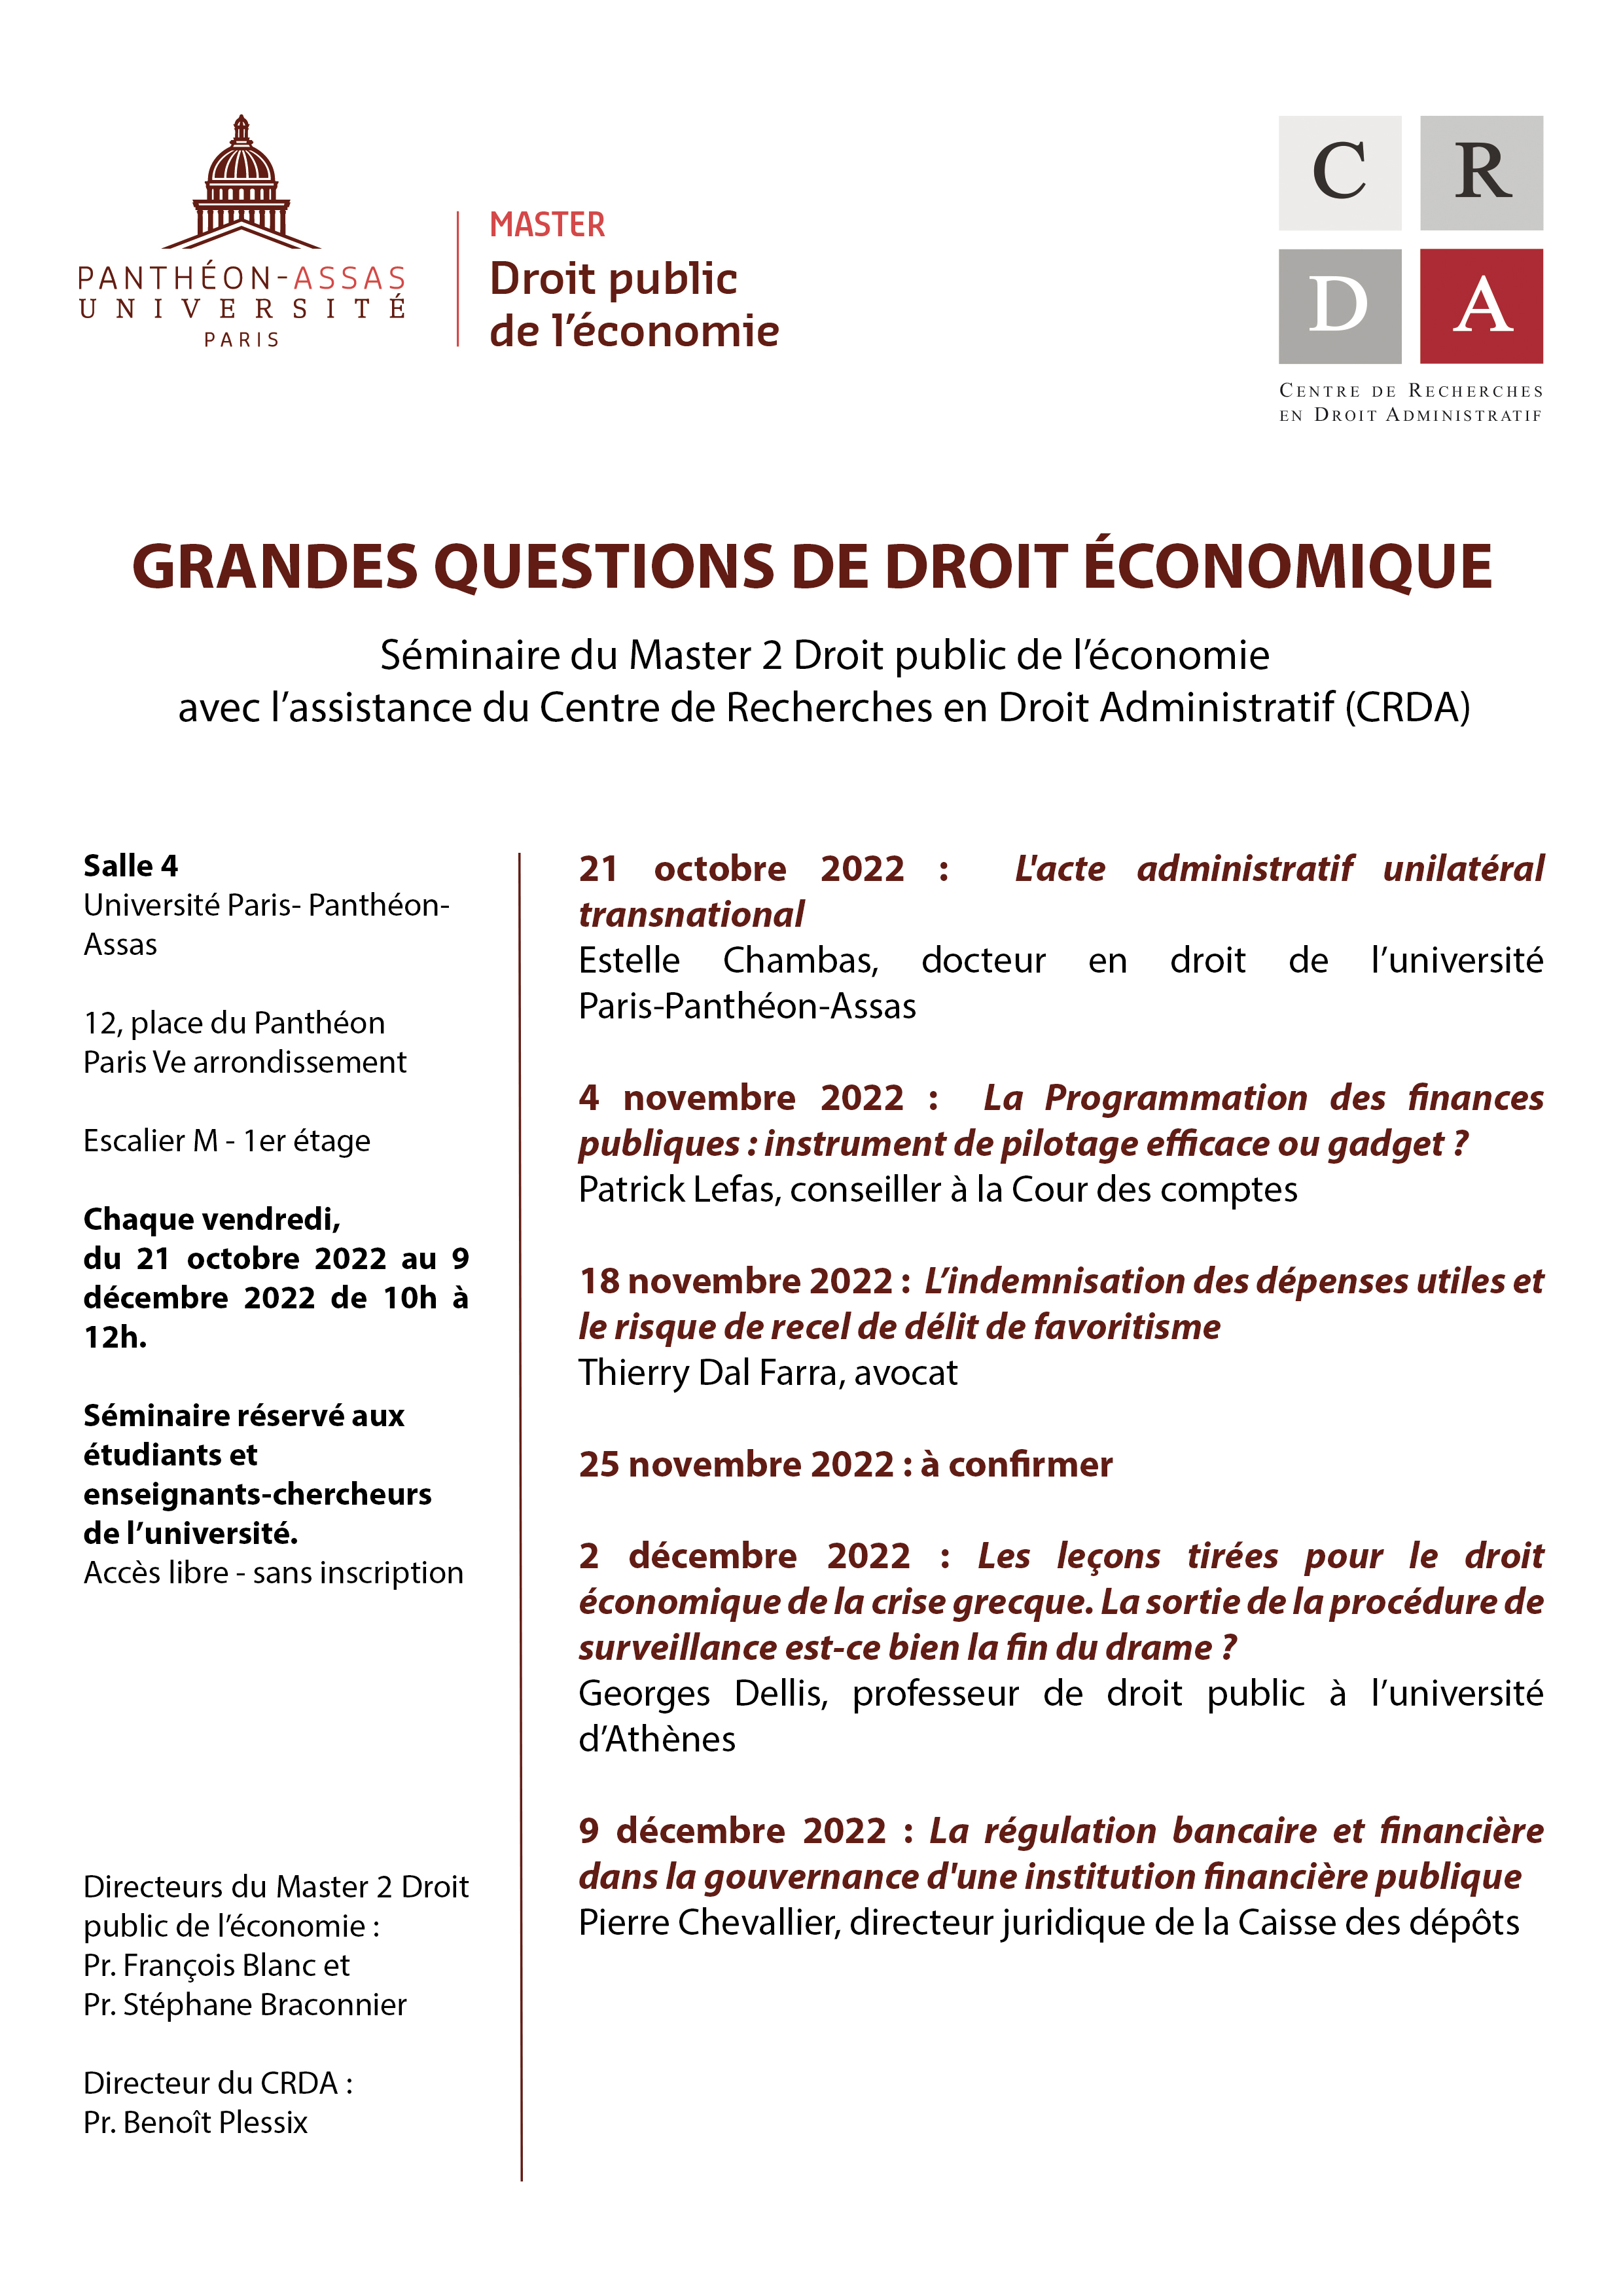  M2 DPE programme séminaire "Grandes questions de droit économique" - S1 2022-2023